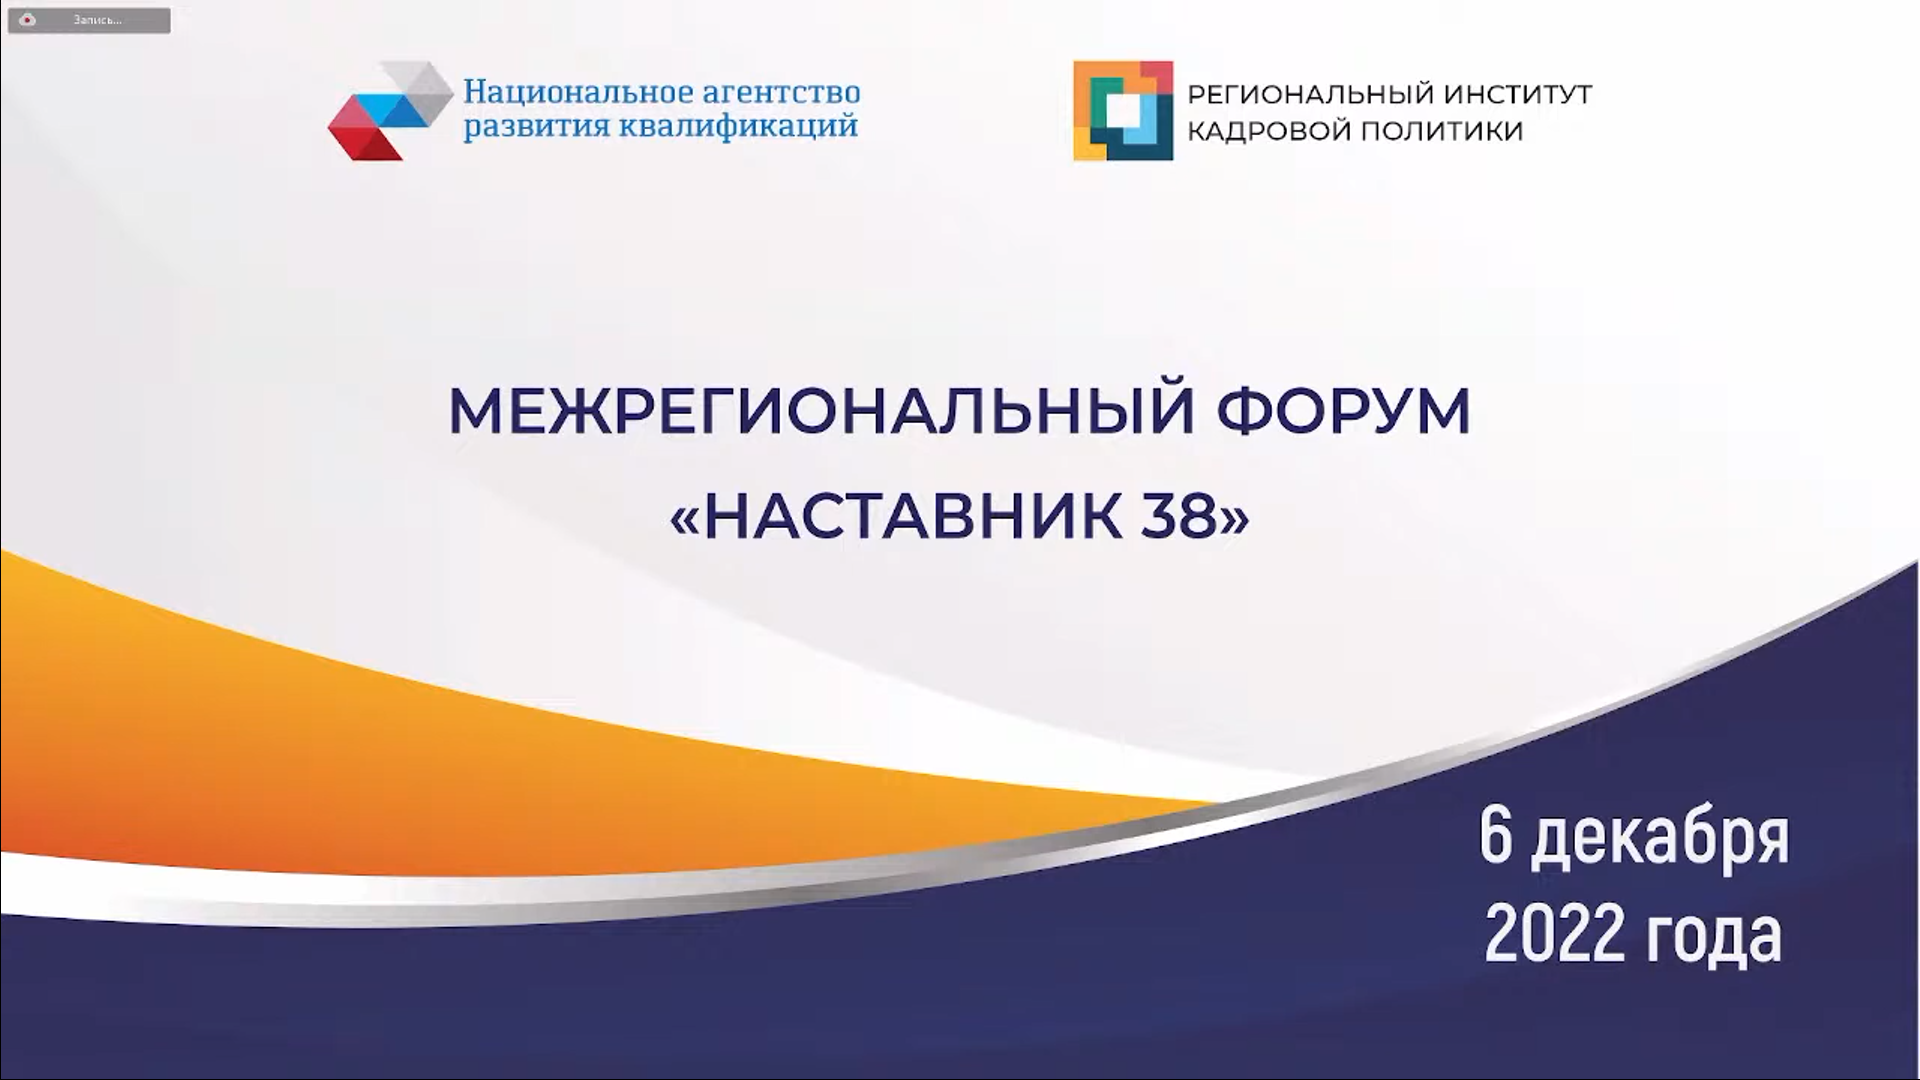 Центр опережающей профессиональной подготовки Иркутской области стал участником Межрегионального форума «Наставник 38»